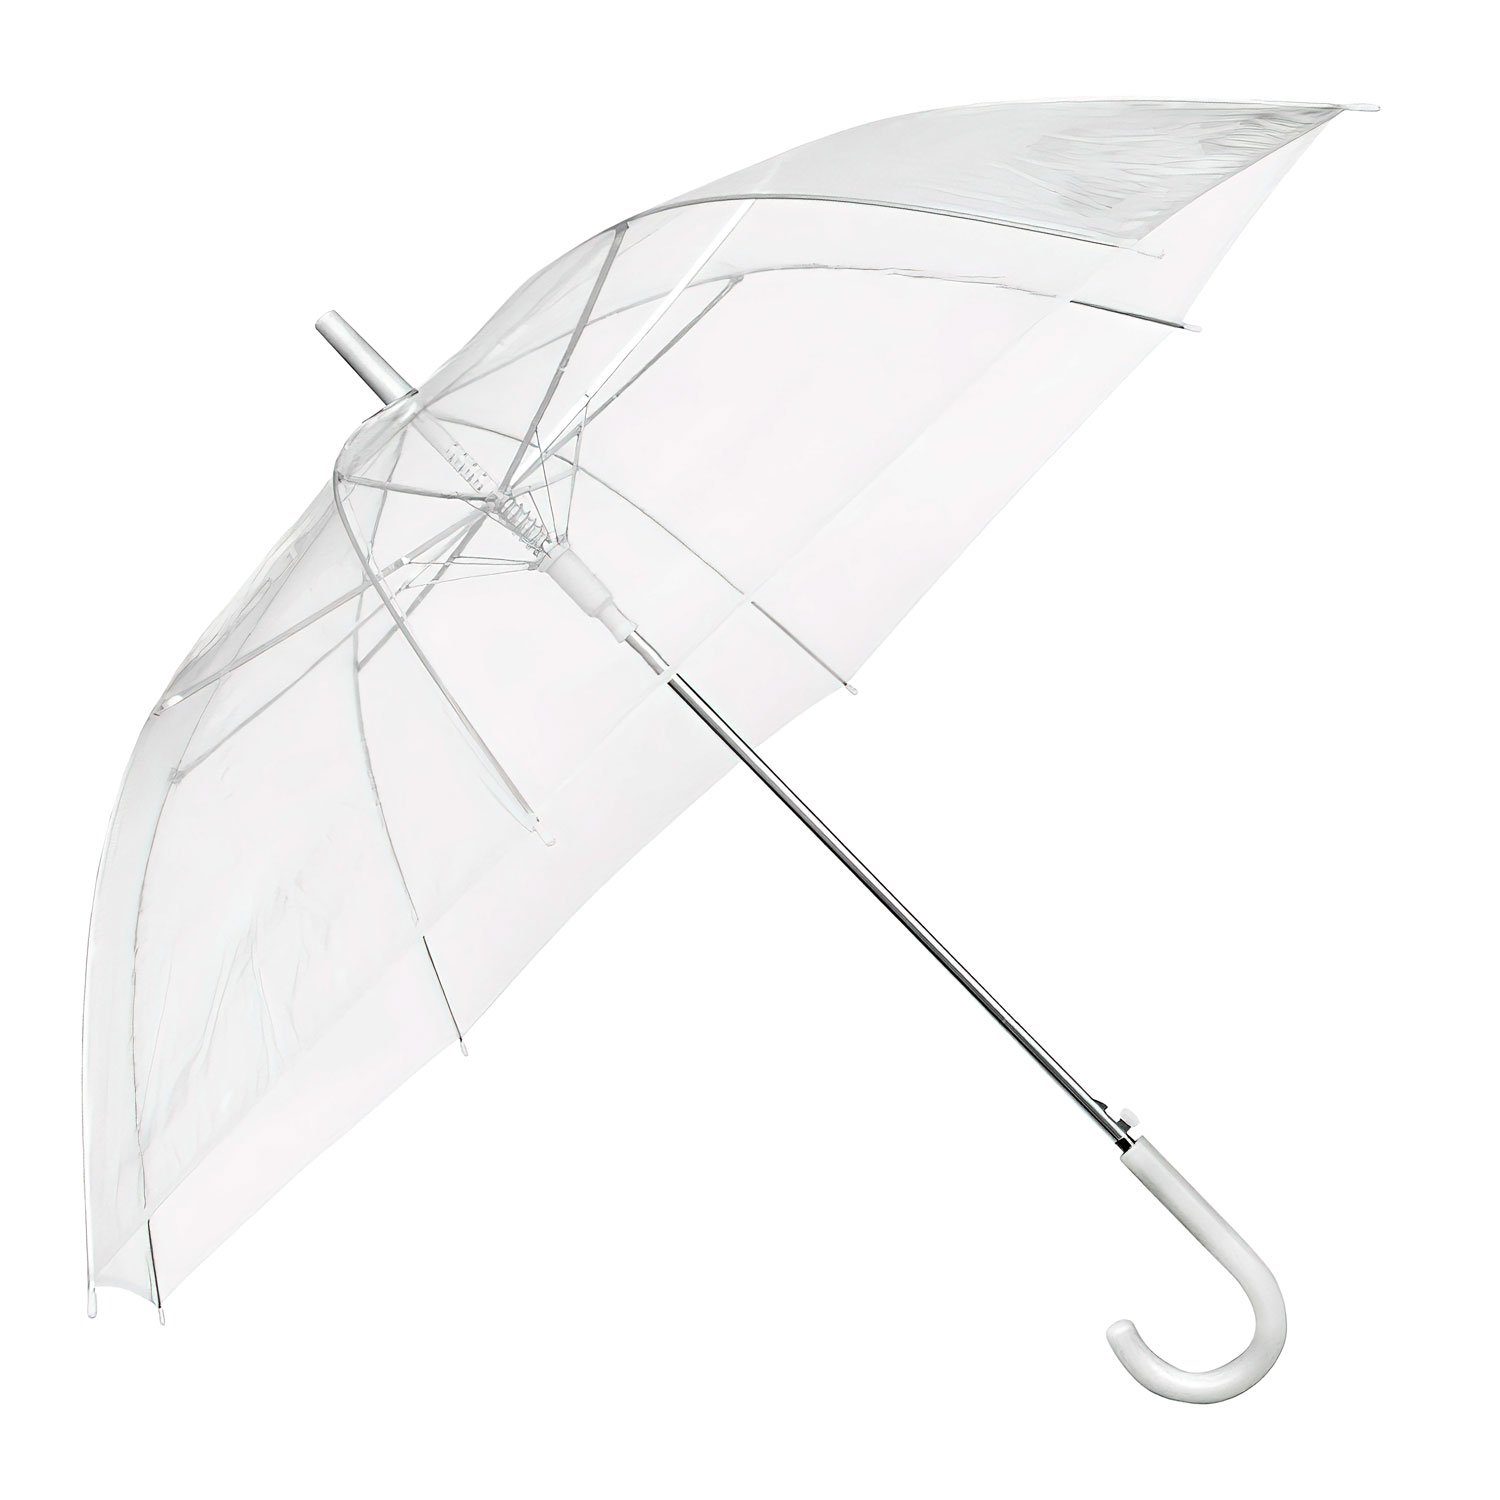 Goods+Gadgets Stockregenschirm, Eleganter Regenschirm in transparent